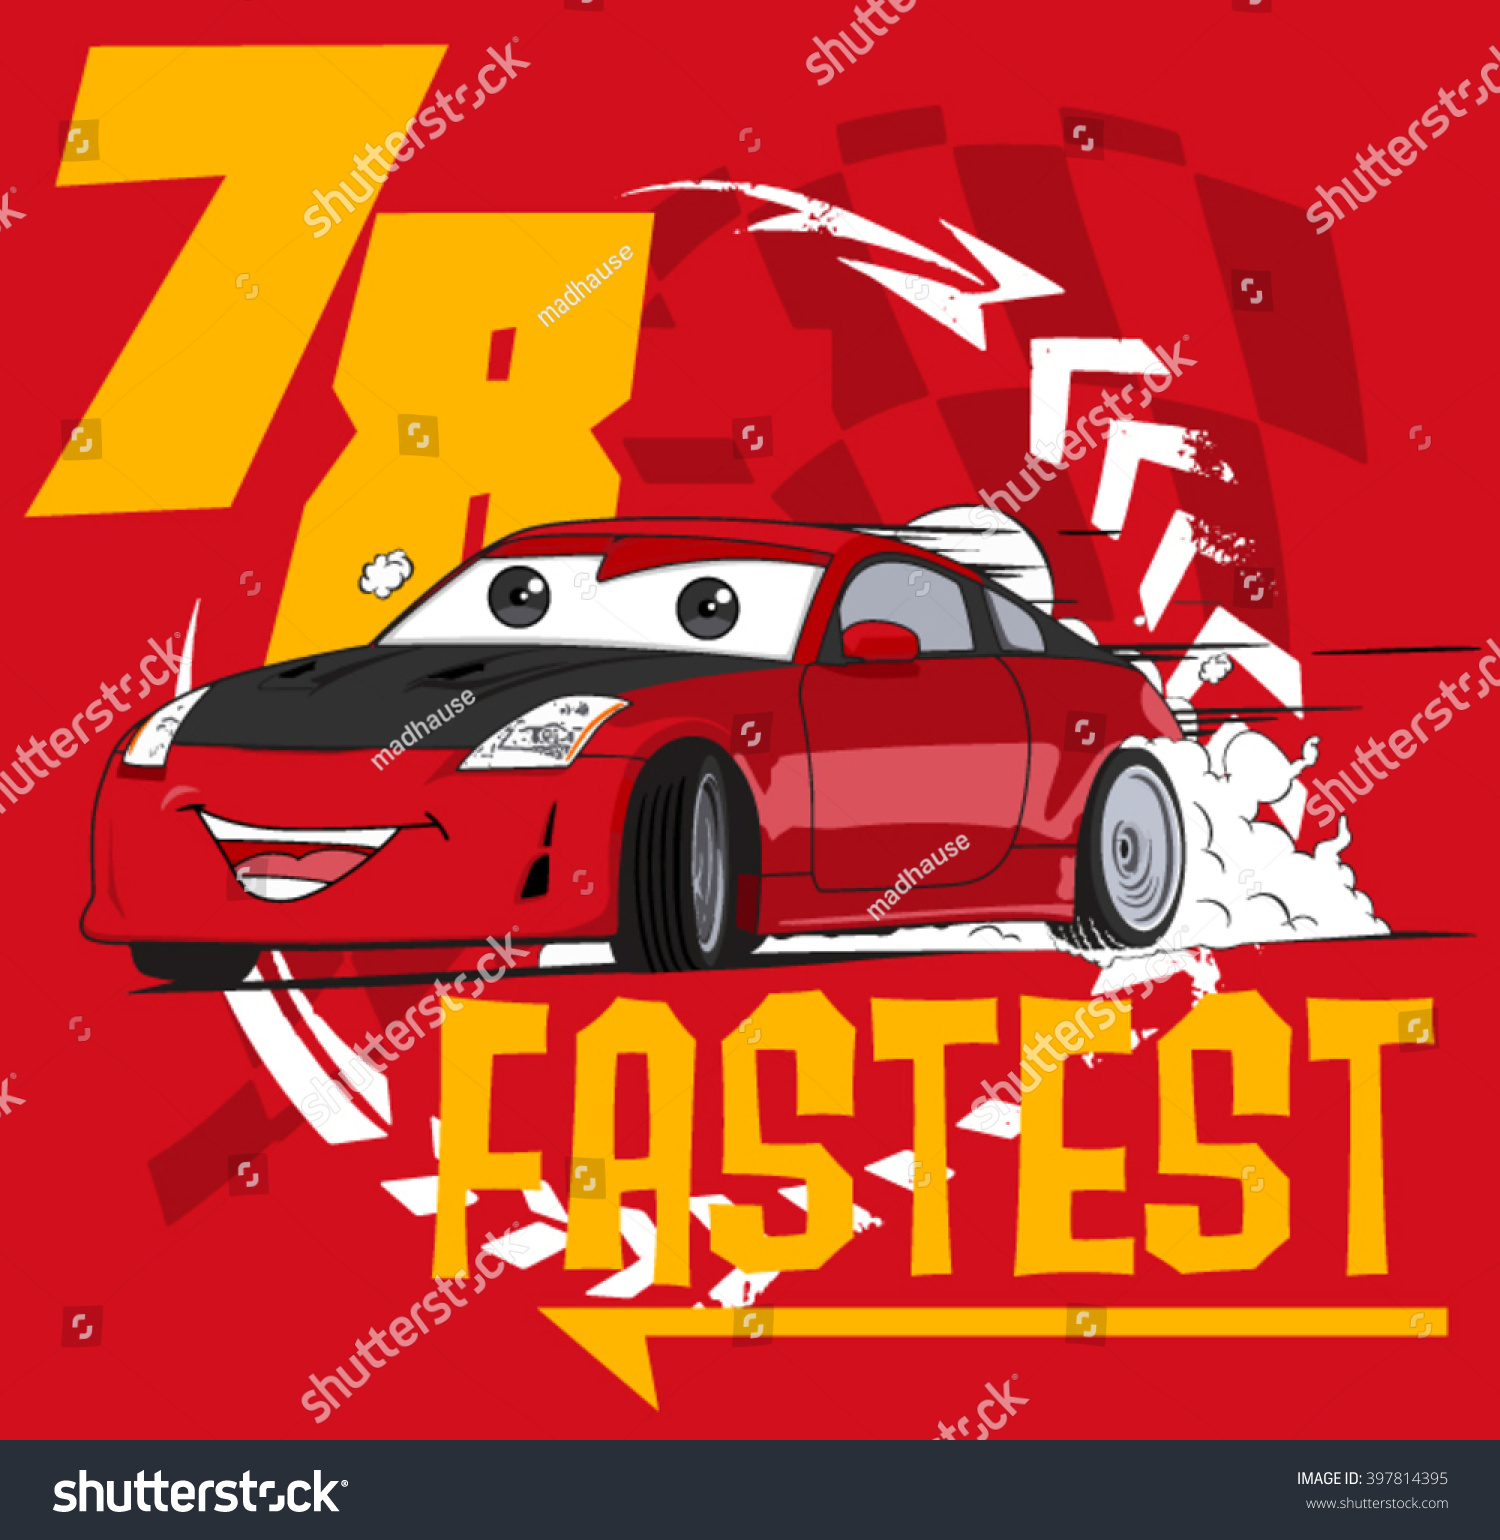 Fastest. Cartoon Car. Illustration Car. Vector Car - 397814395